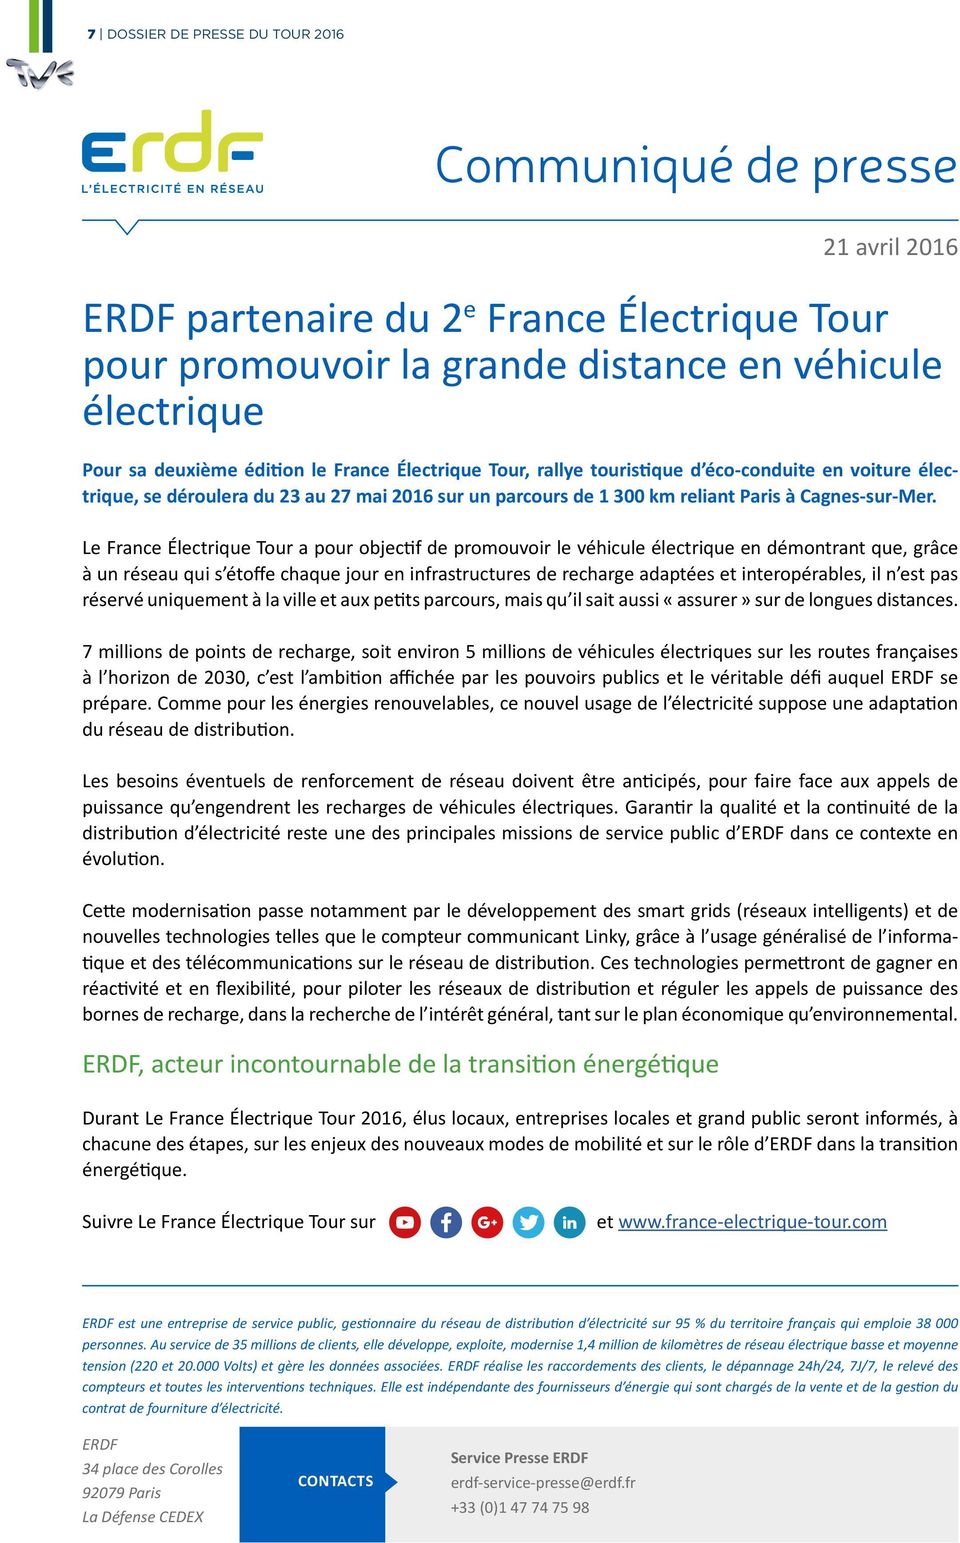 Le France Électrique Tour a pour objectif de promouvoir le véhicule électrique en démontrant que, grâce à un réseau qui s étoffe chaque jour en infrastructures de recharge adaptées et interopérables,